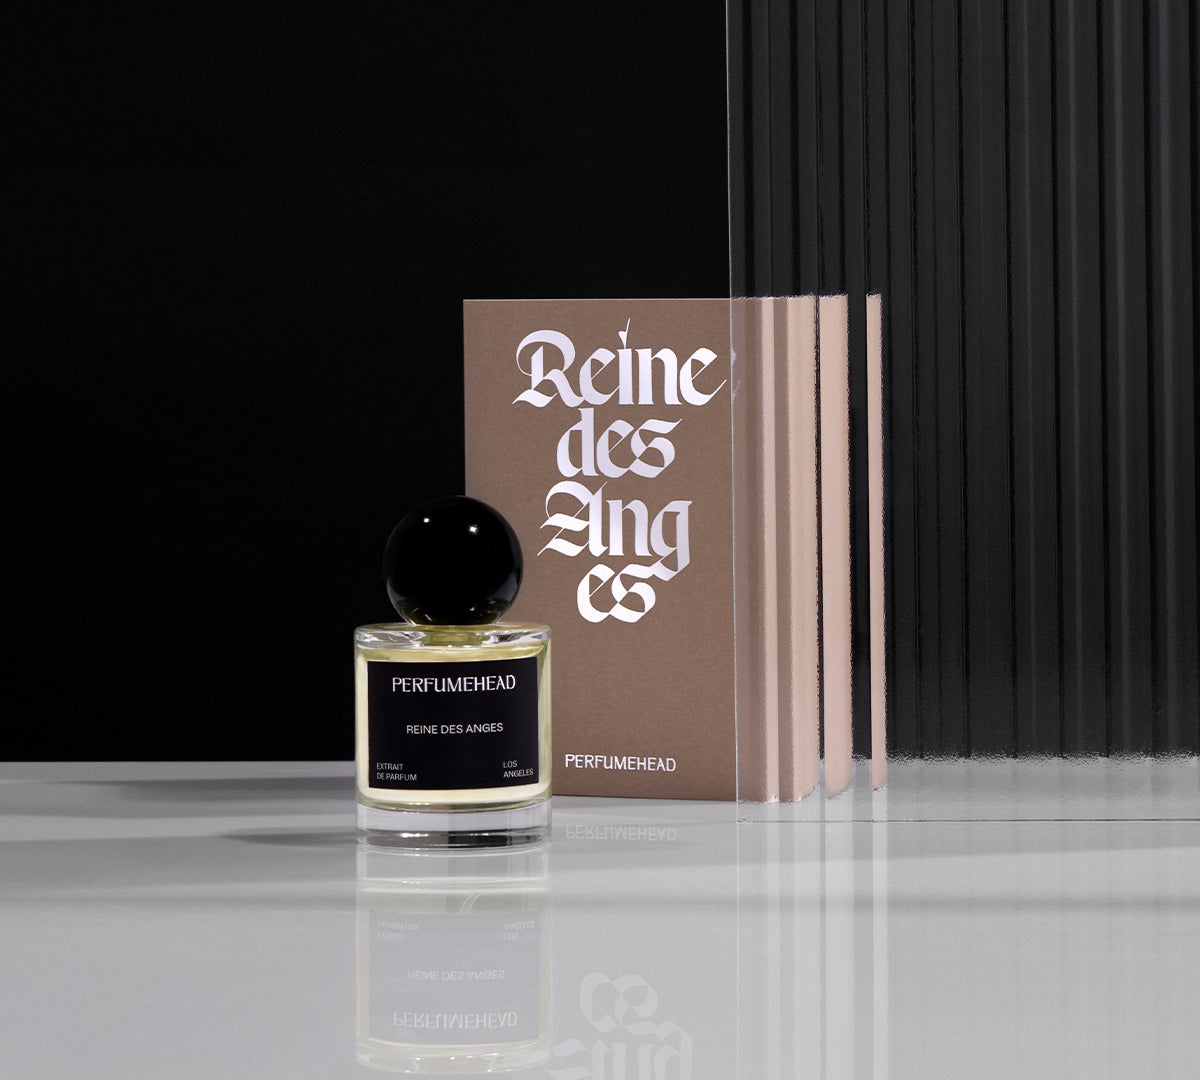 Reine des Anges extrait de parfum 50ml signature spray bottle and box. 